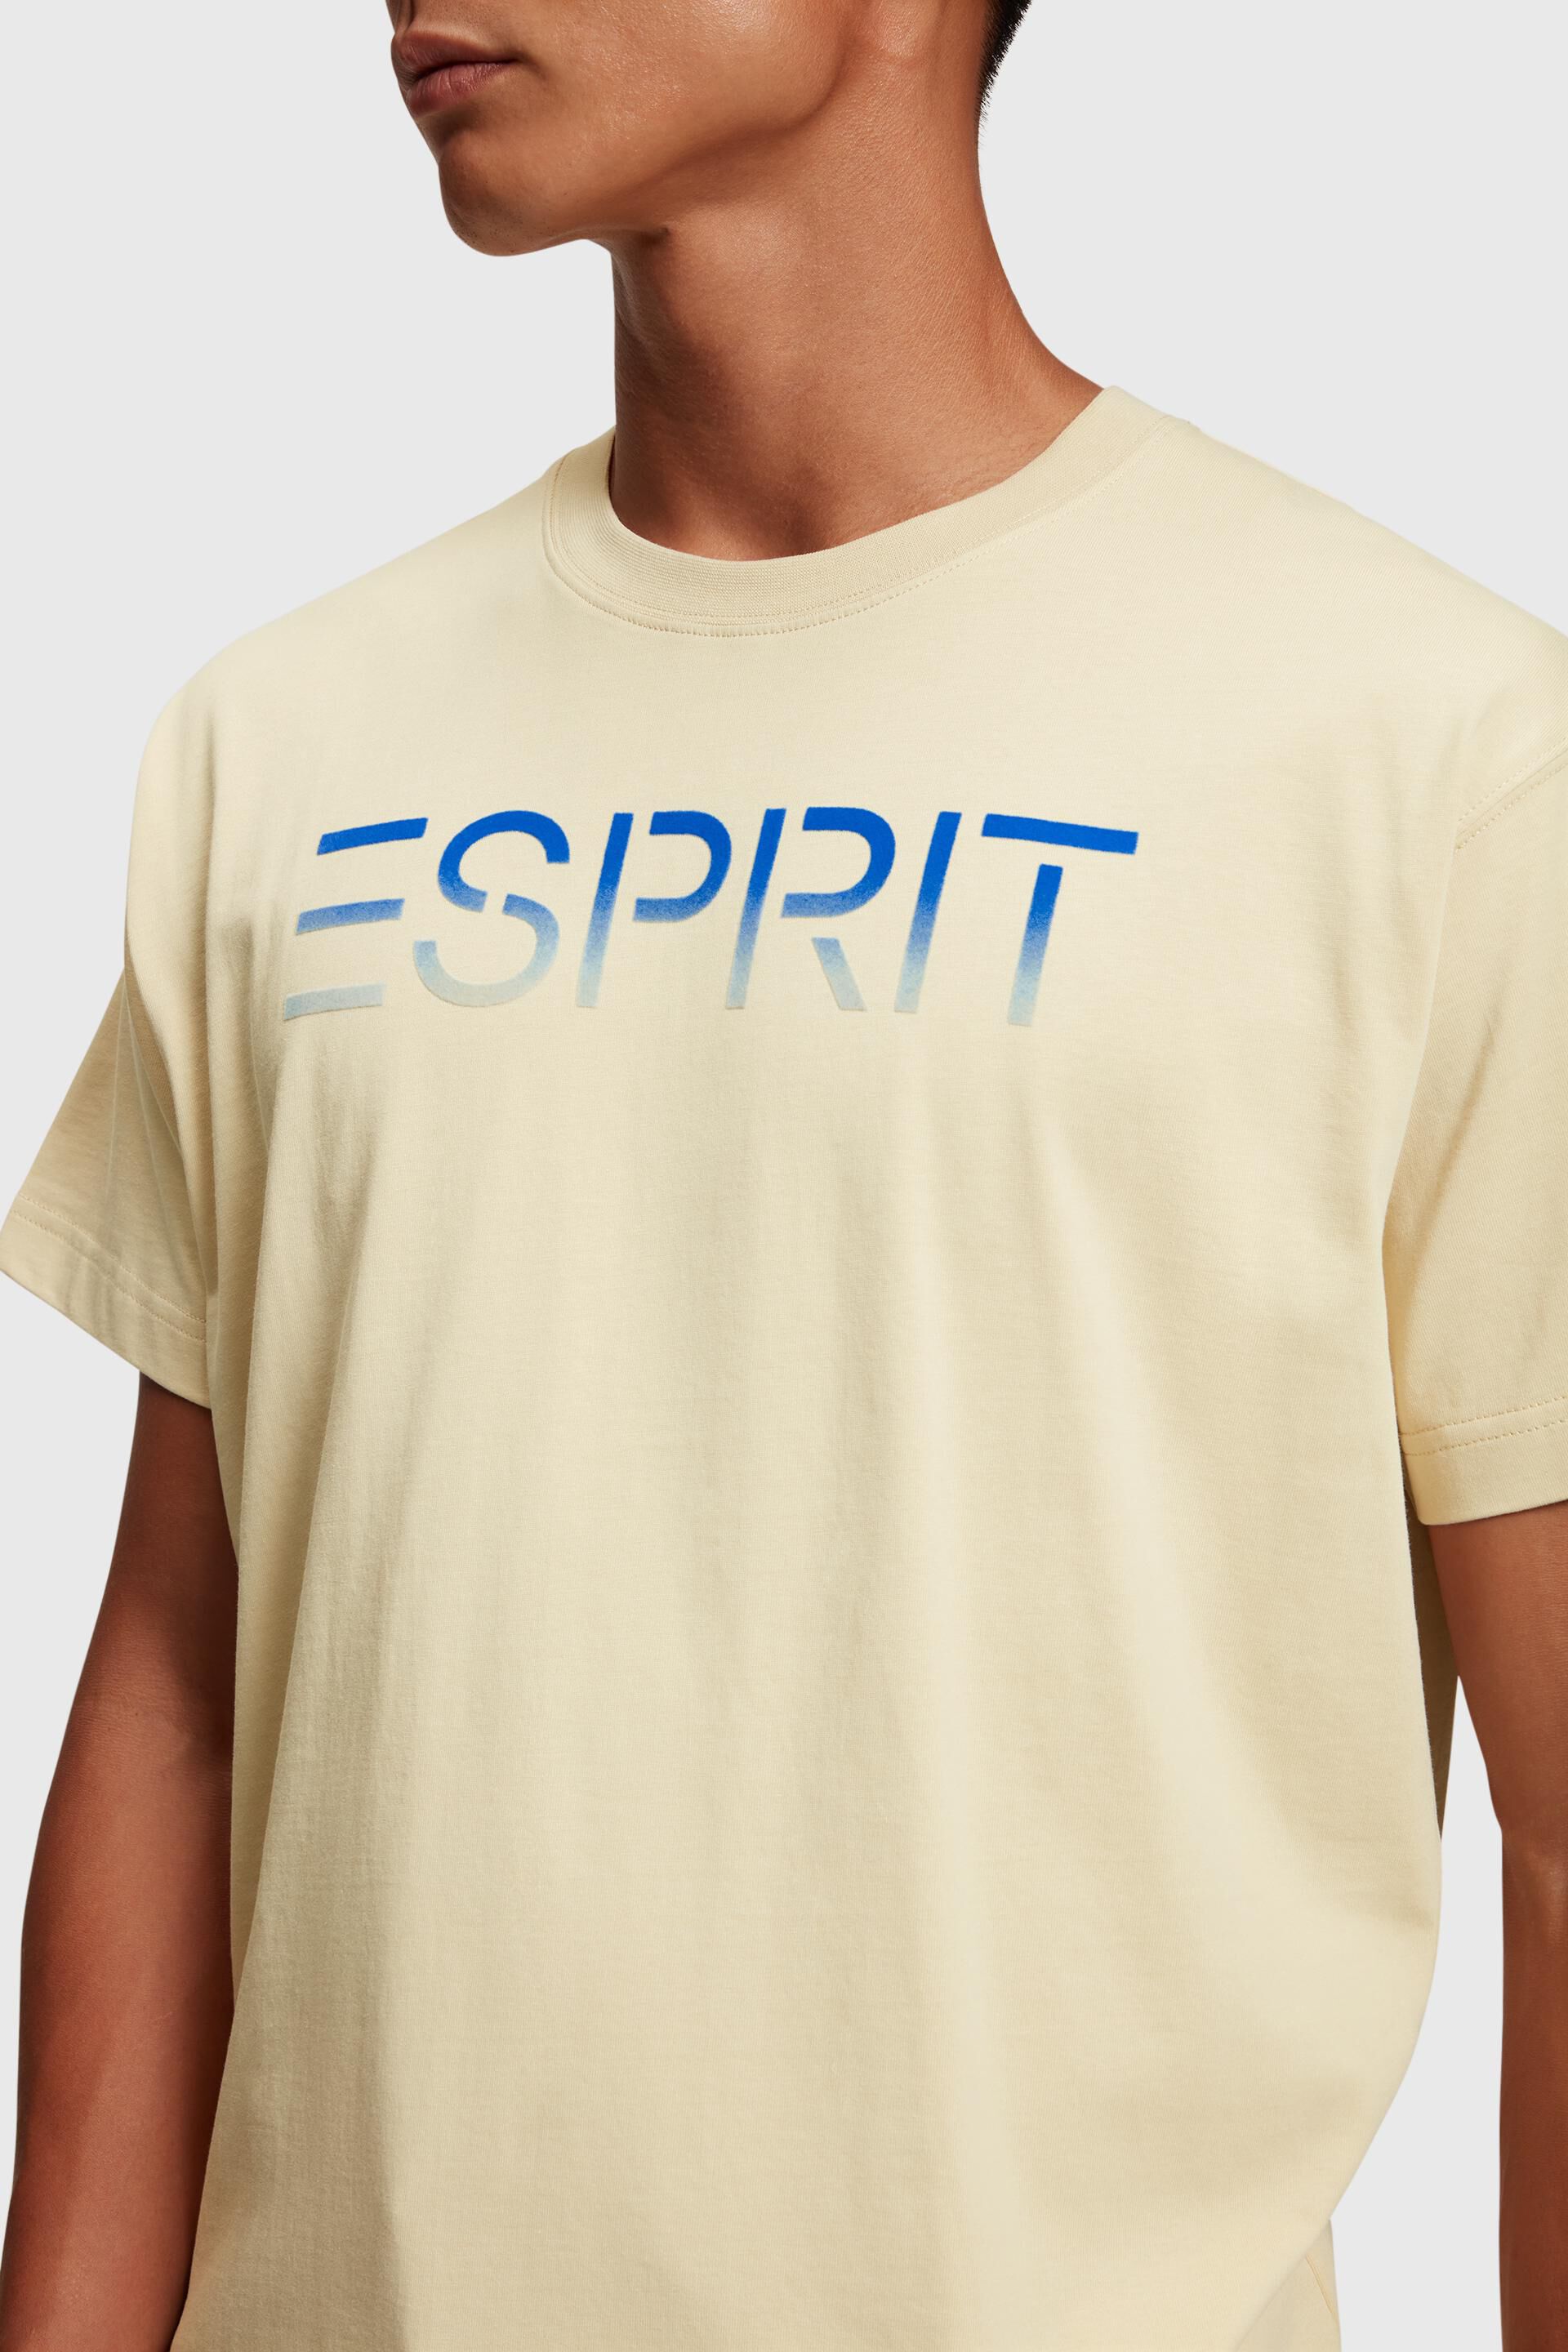 Esprit der mit Brust T-Shirt Logo-Applikation auf aufgeflockter